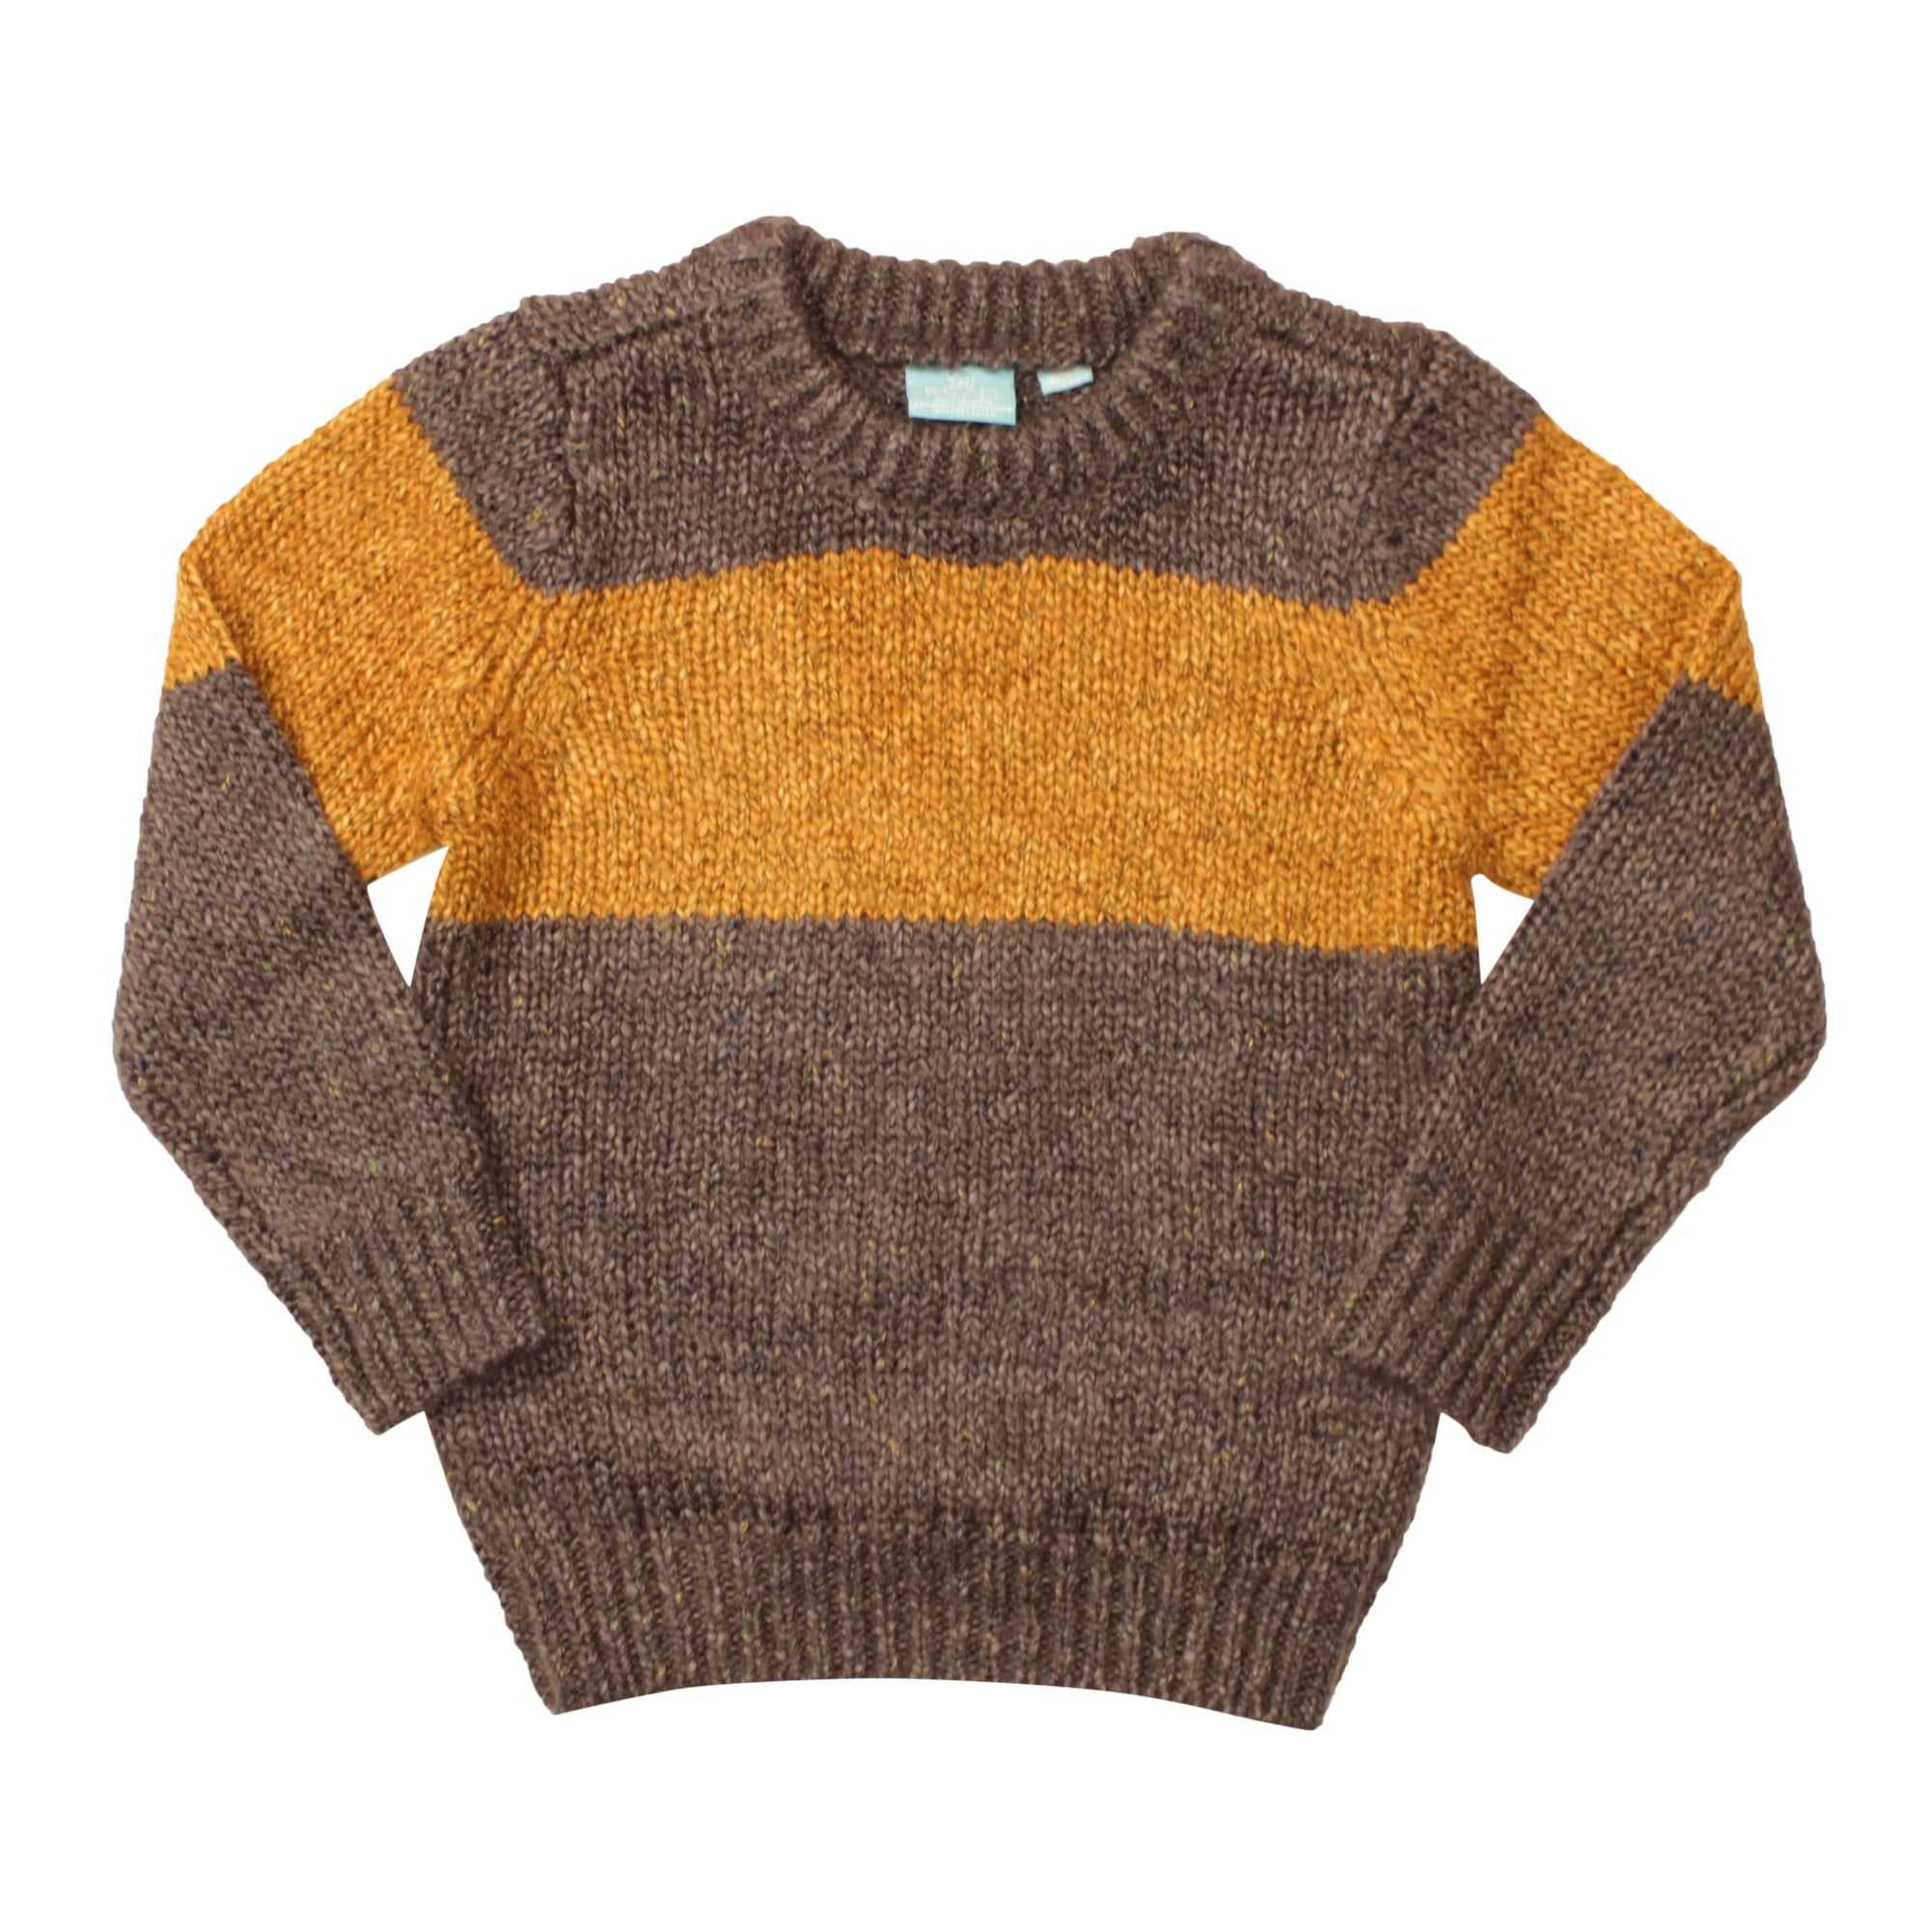 Samson Sweater Toddler